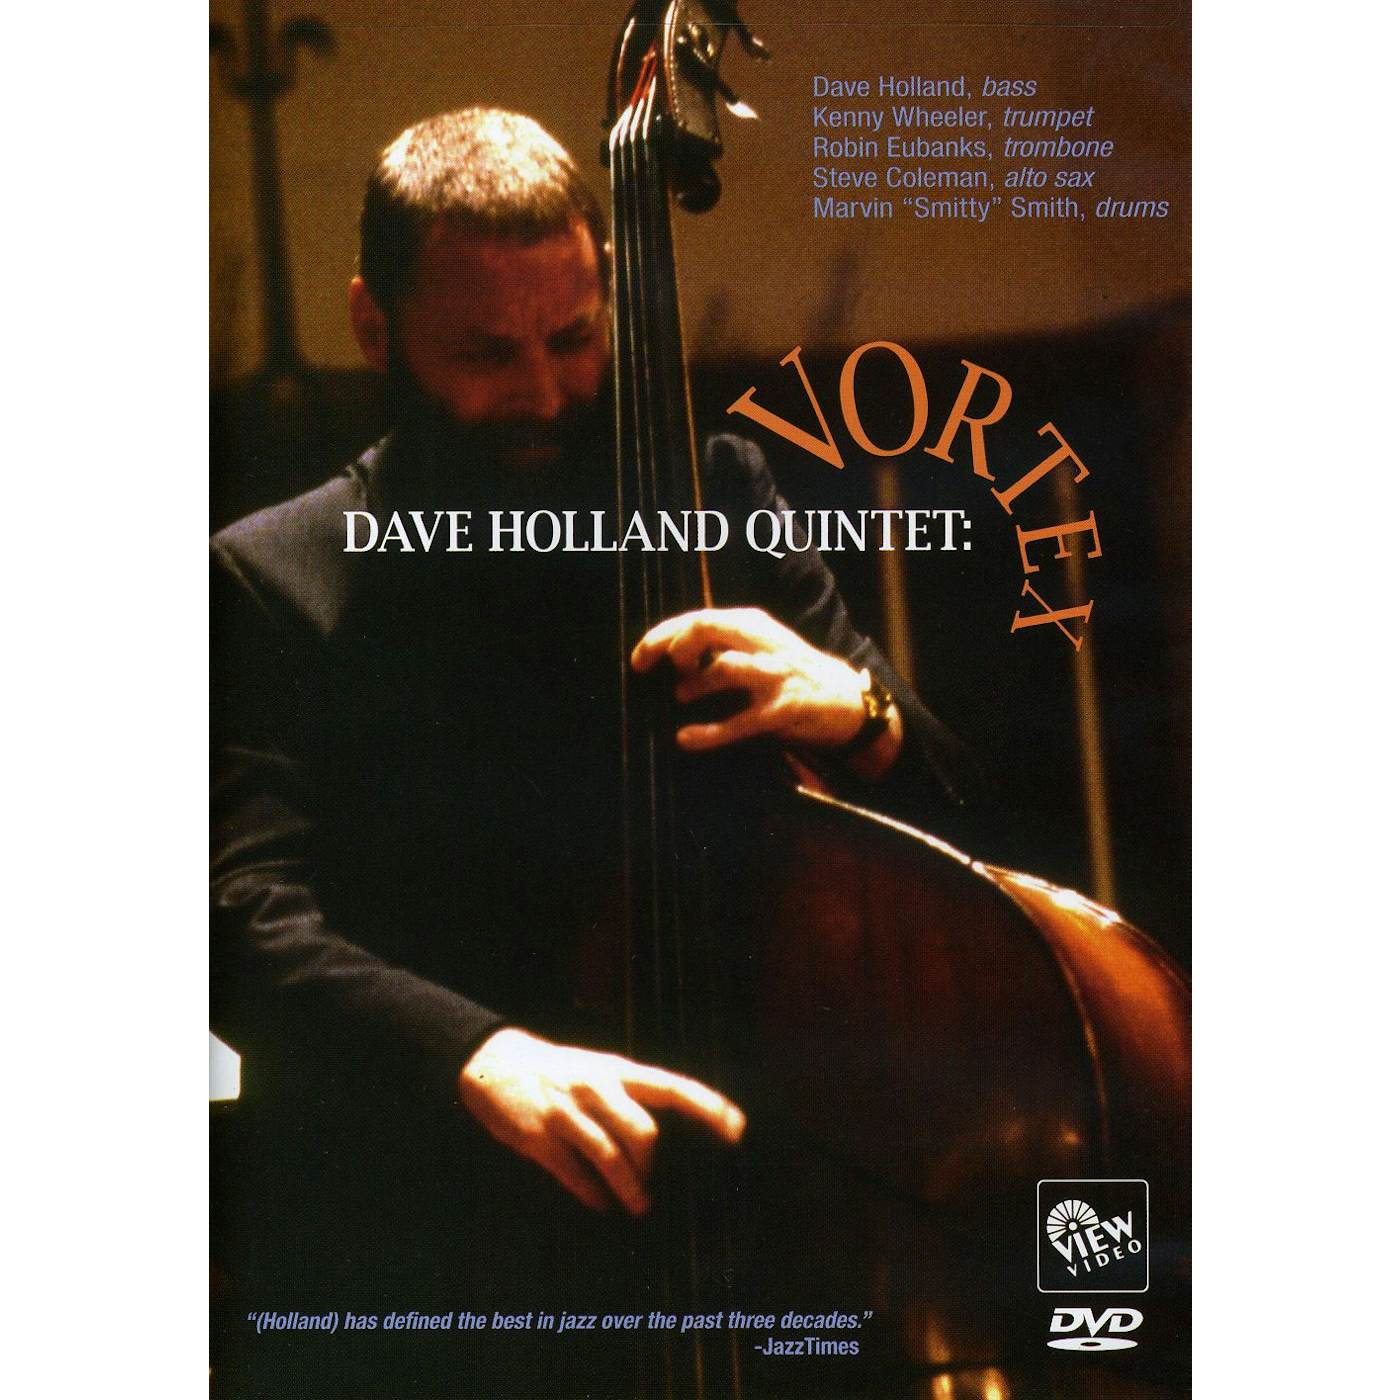 Dave Holland VORTEX DVD